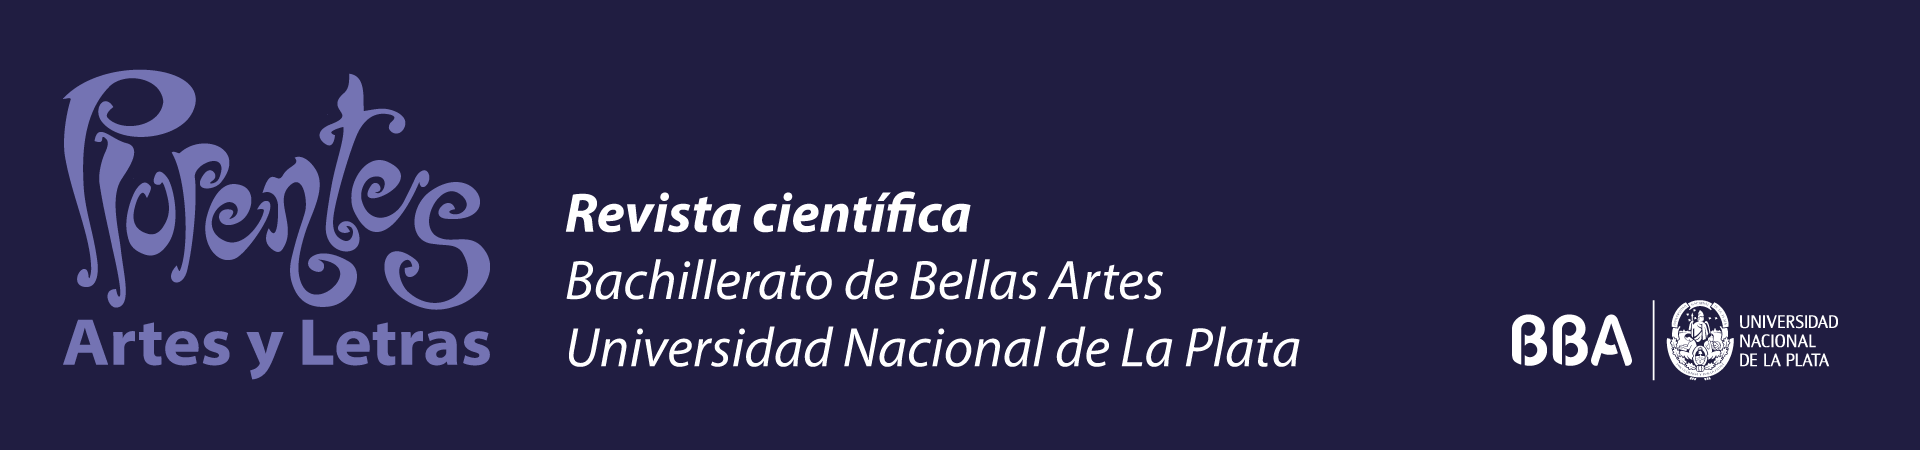 Plurentes. Artes y Letras. Revista científica del Bachillerato de Bellas Artes UNLP